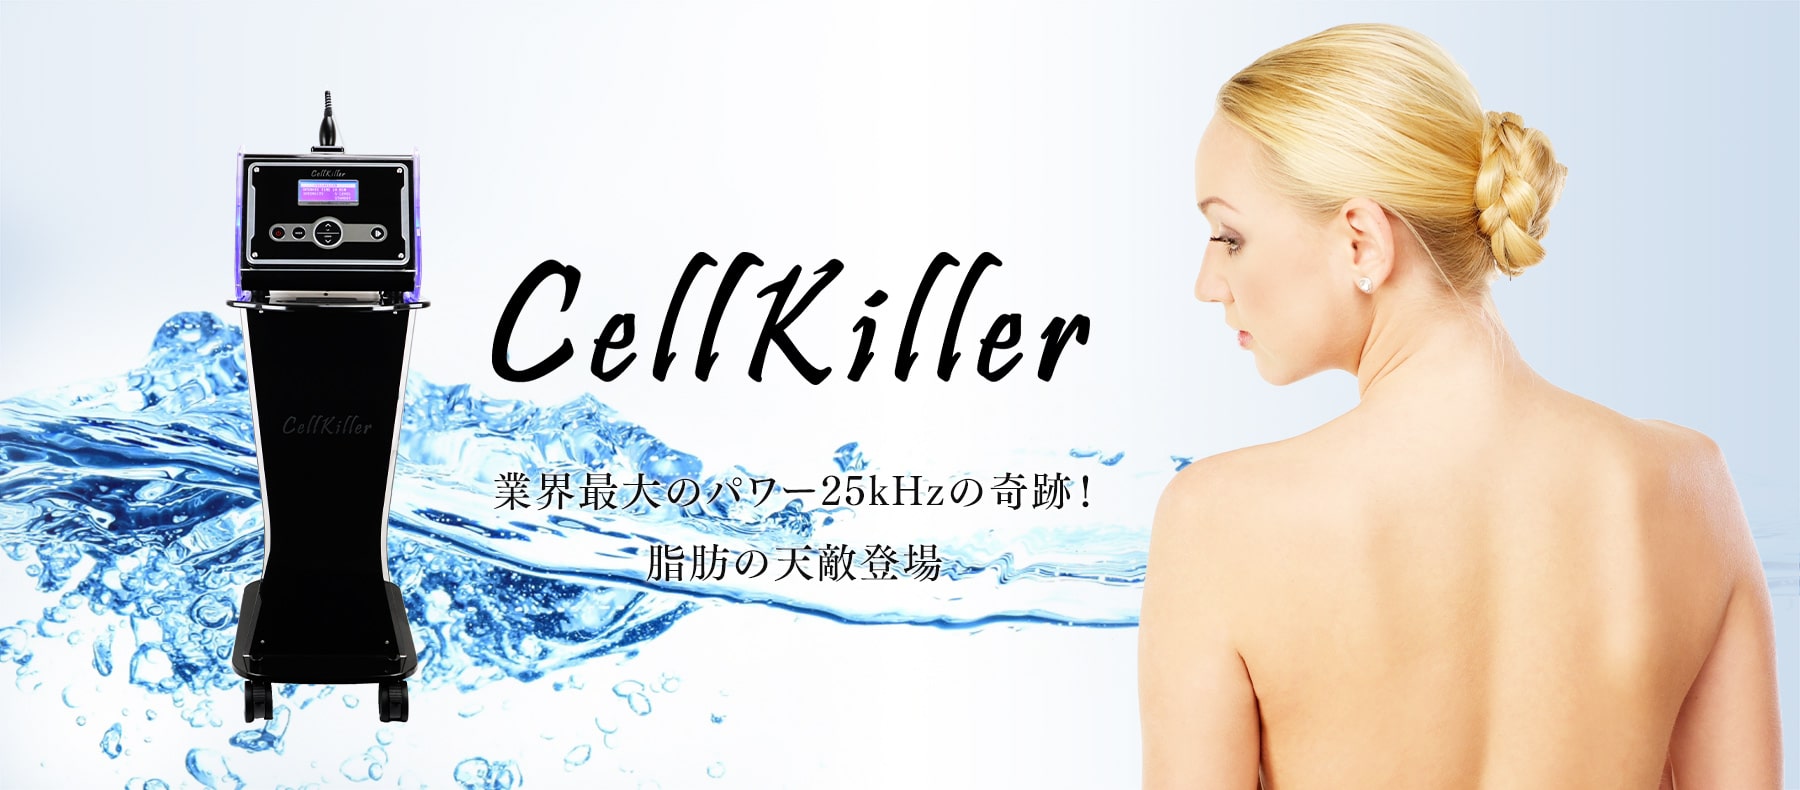 業務用キャビテーション Cellkiller(セルキラー)